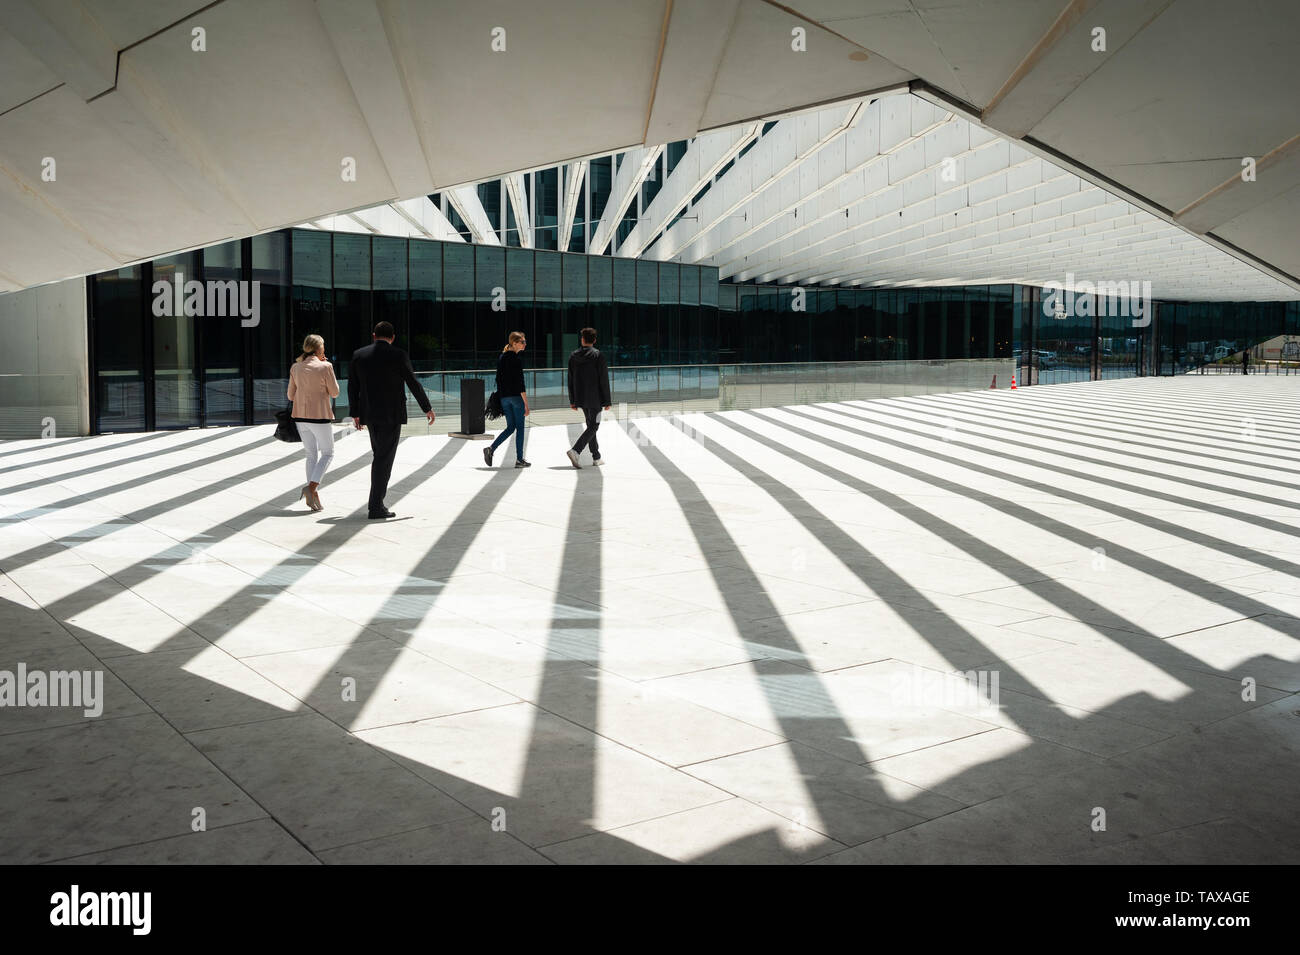 11.06.2018, Lisbona , Portogallo - Cortile interno dell'EDP sede nella capitale portoghese. L'edificio è stato progettato da archit portoghese Foto Stock